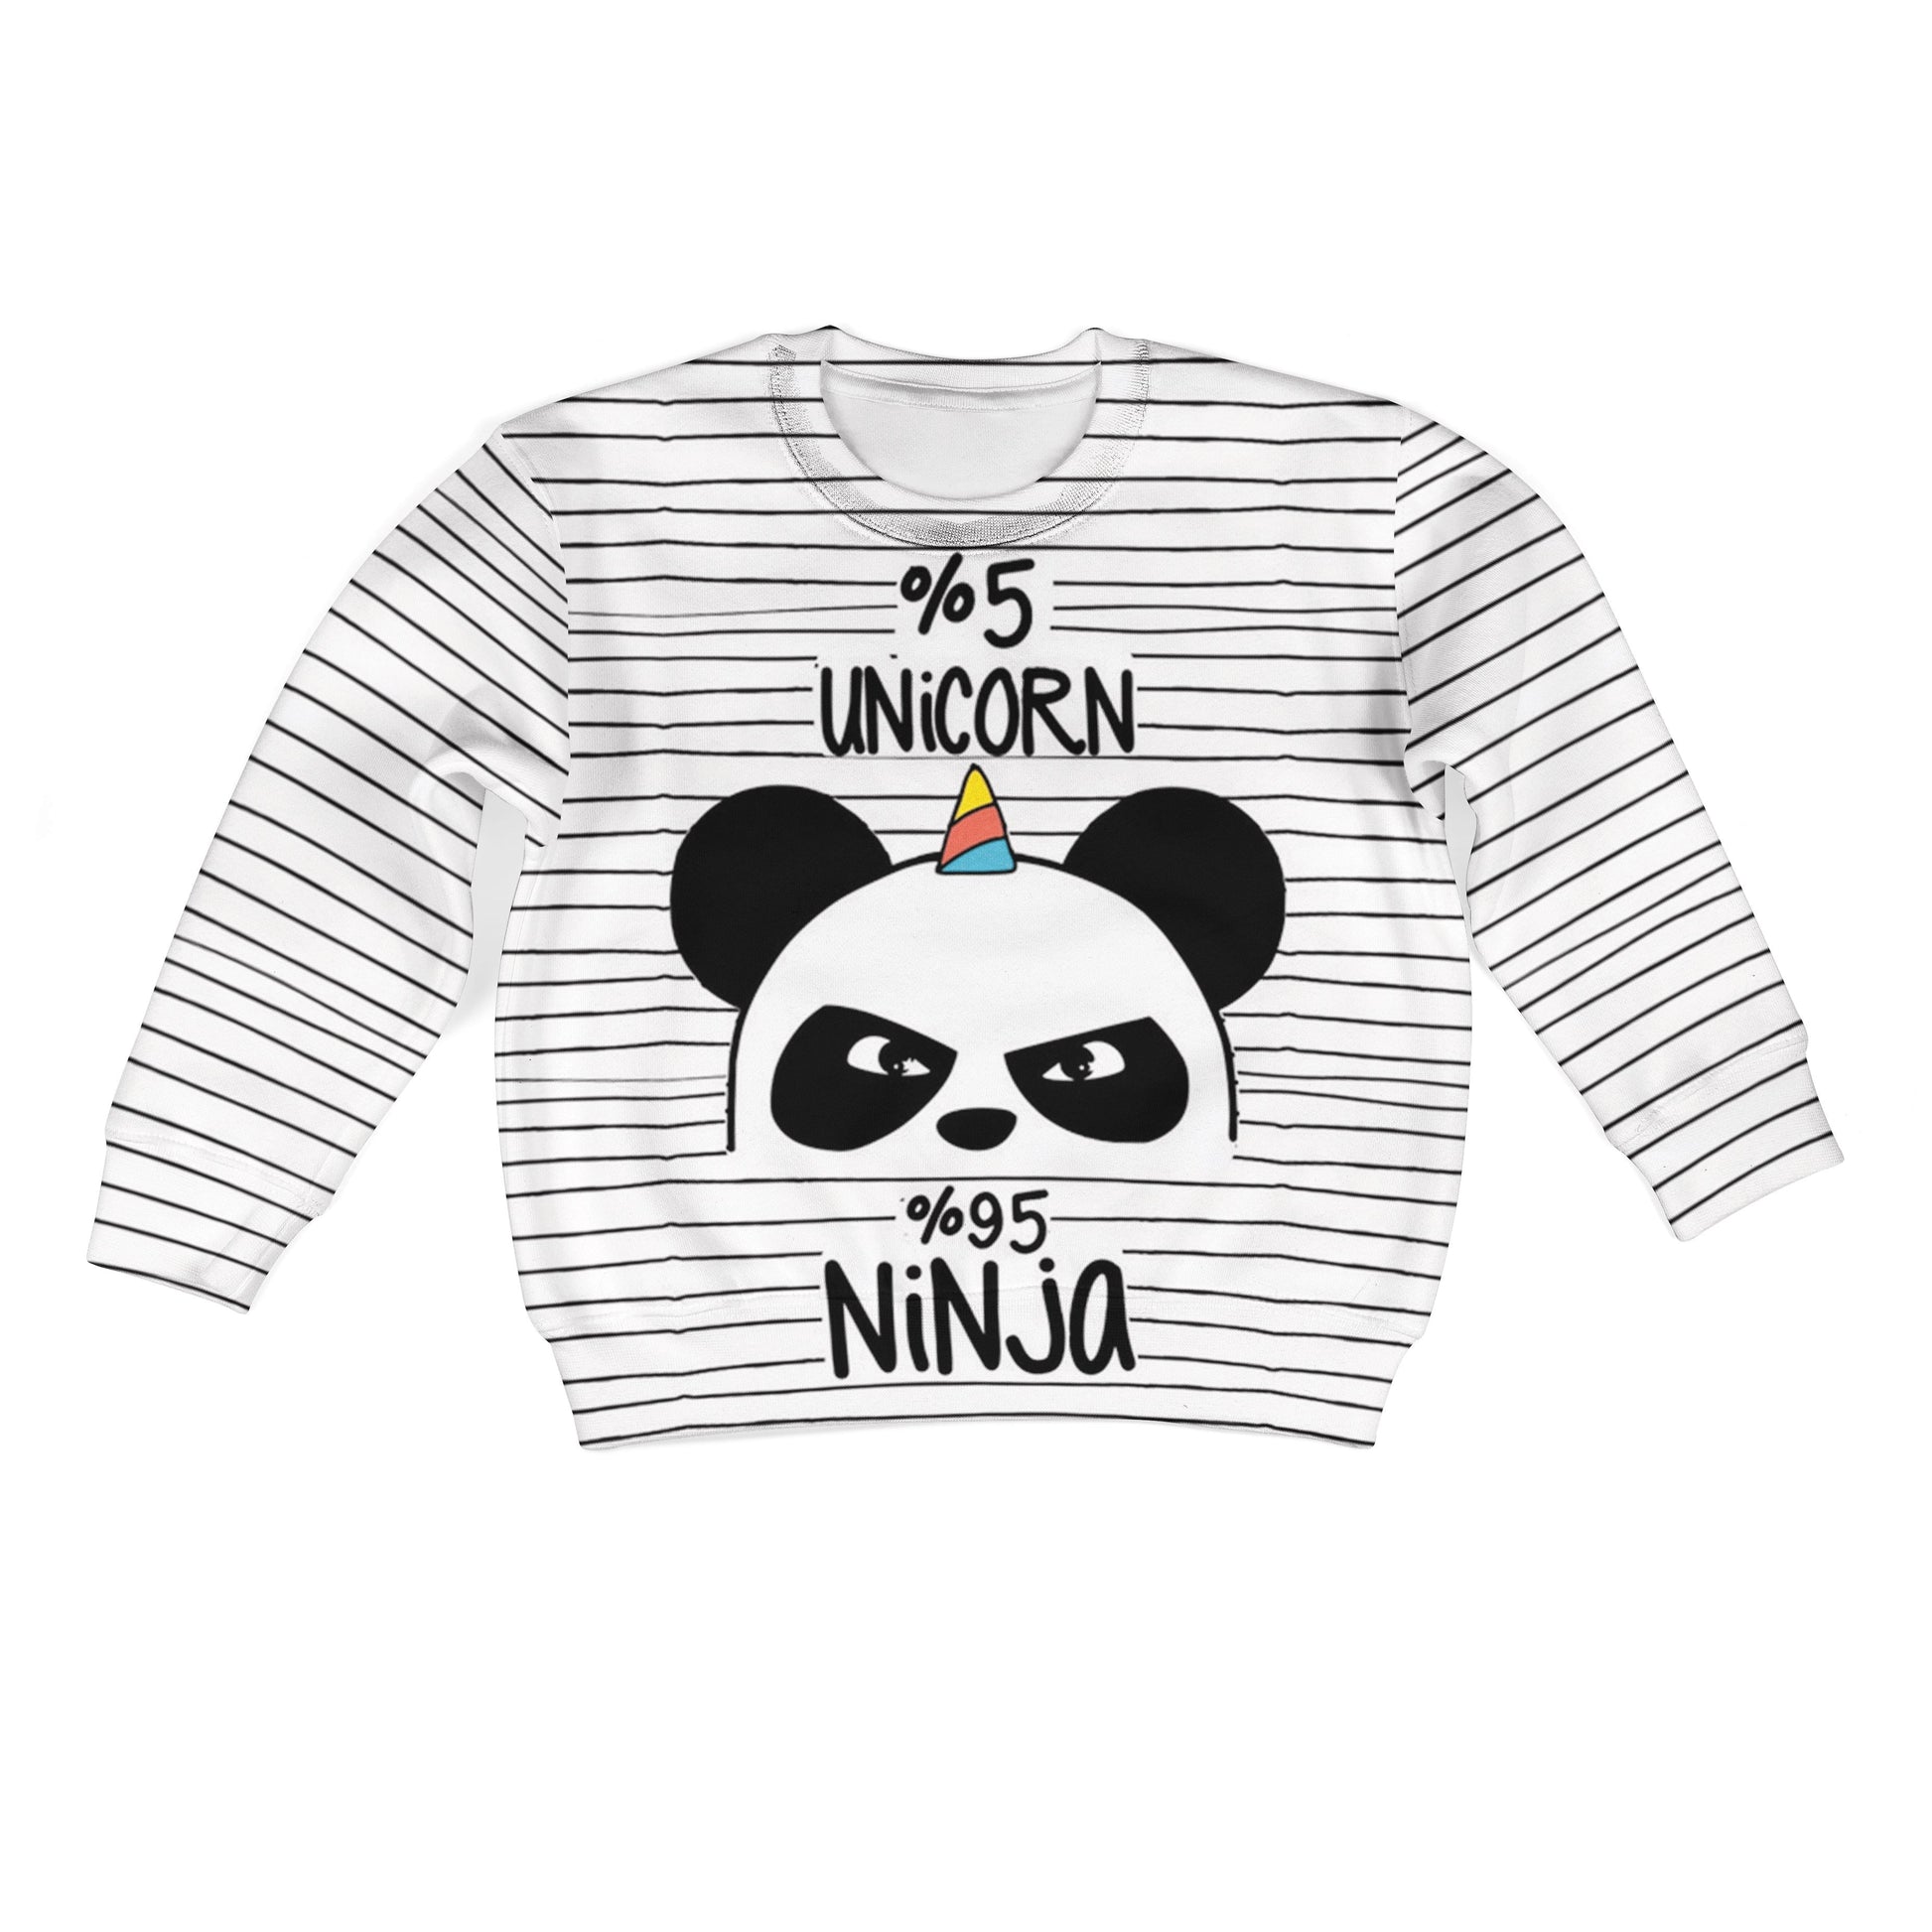 5% Unicorn 95% Ninja Custom Hoodies T-shirt Apparel HD-UNI110112K kid 3D apparel Kid Sweatshirt S/6-8 